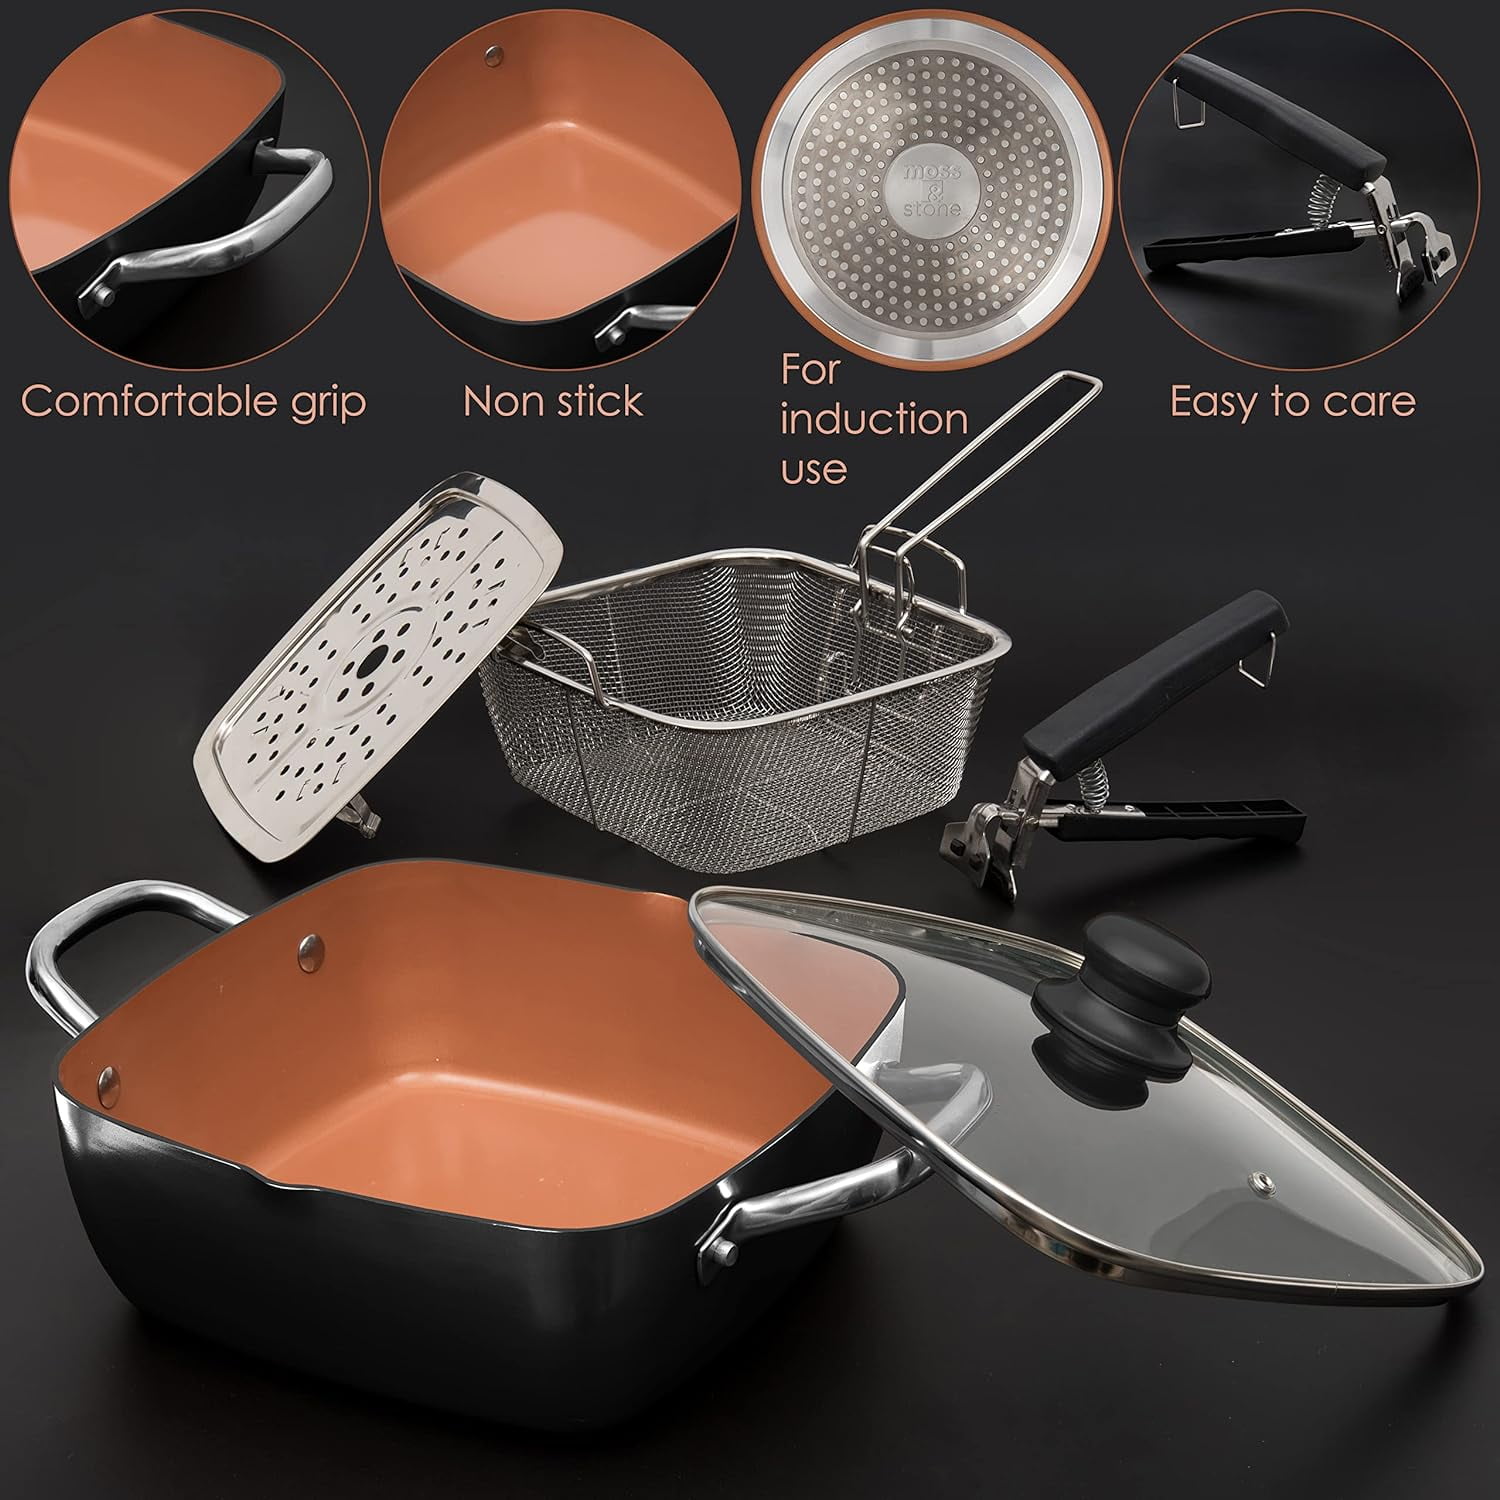 Moss & Stone Nonstick Stackable Aluminum Pots and Pans Set (7 Pieces  Copper) 